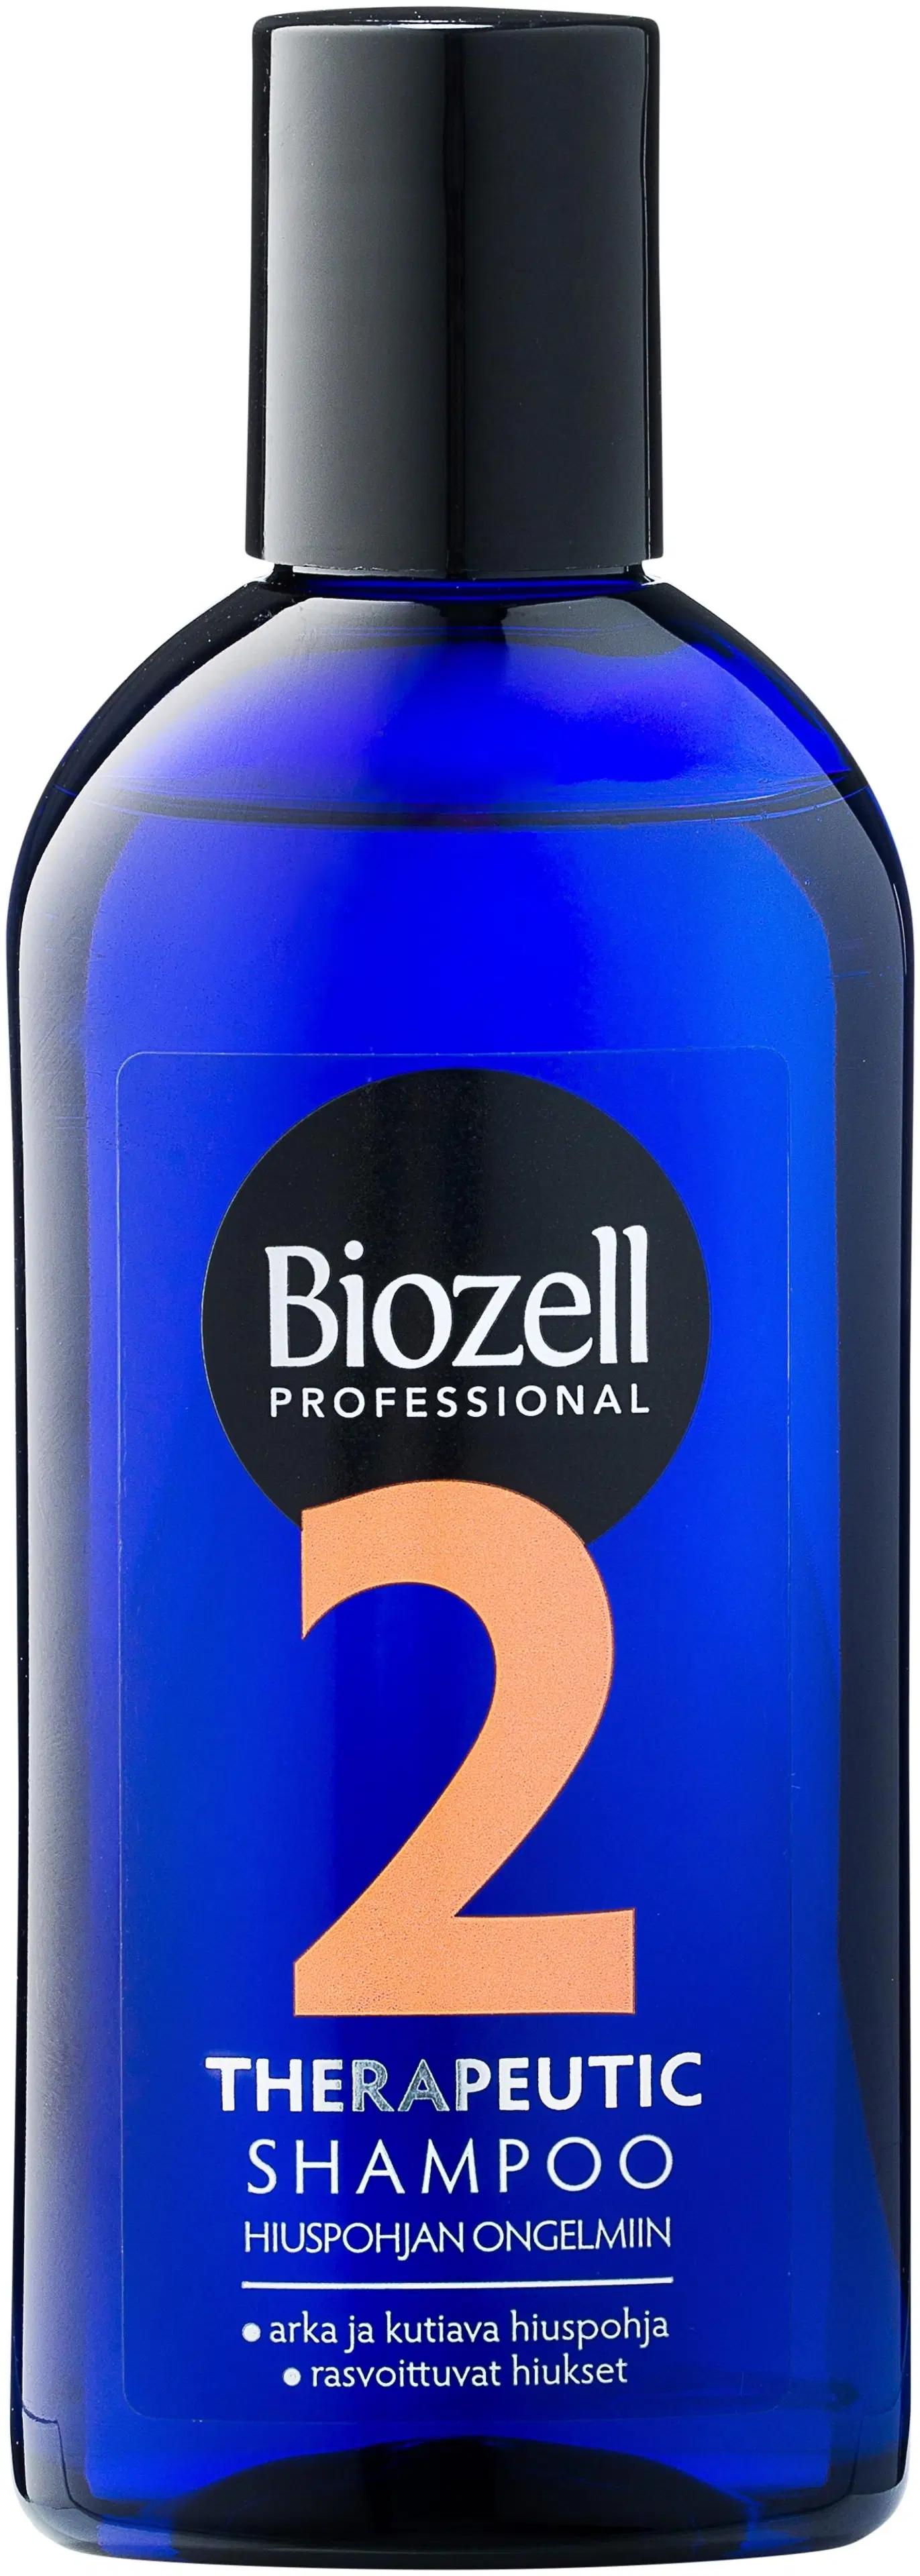 Biozell Professional Therapeutic Shampoo rasvoittuvat hiukset ja arka kutiava hiuspohja 200ml